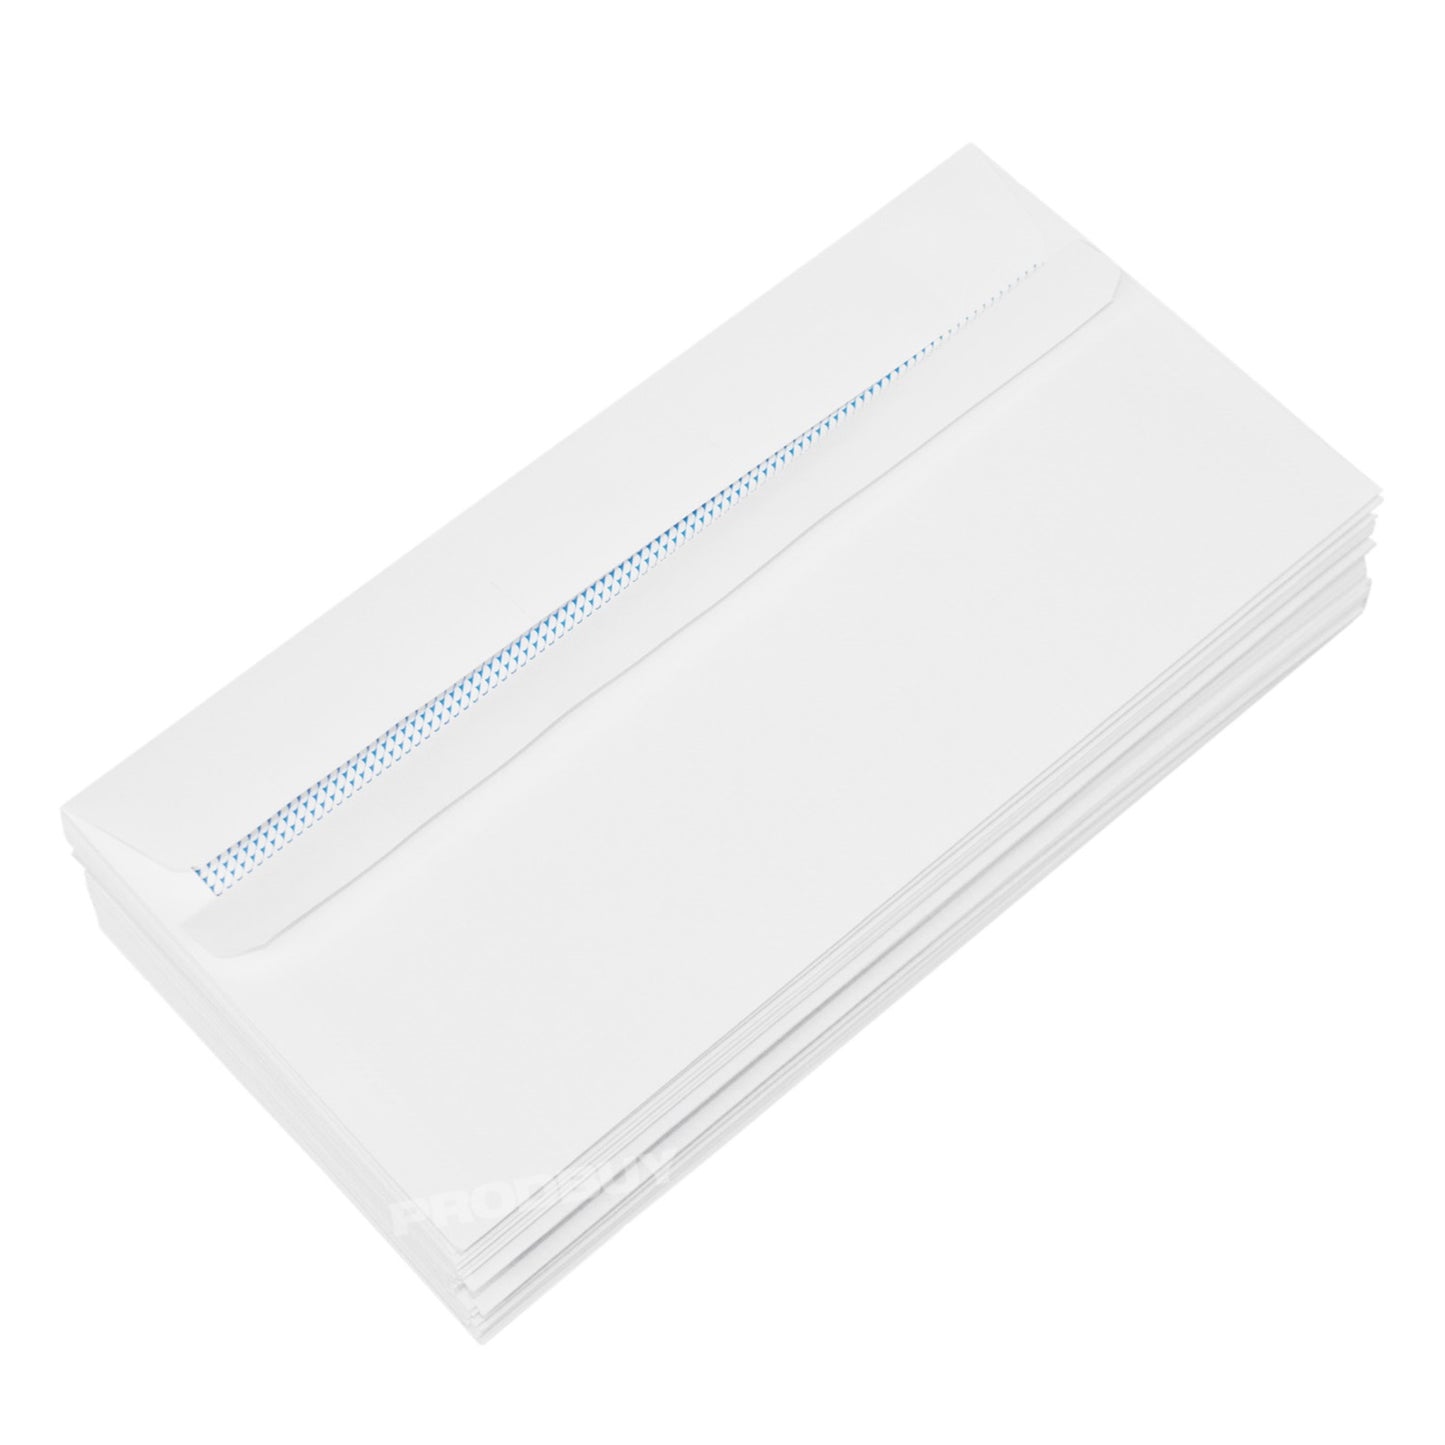 50 DL Envelopes White Plain 90gsm Self Seal